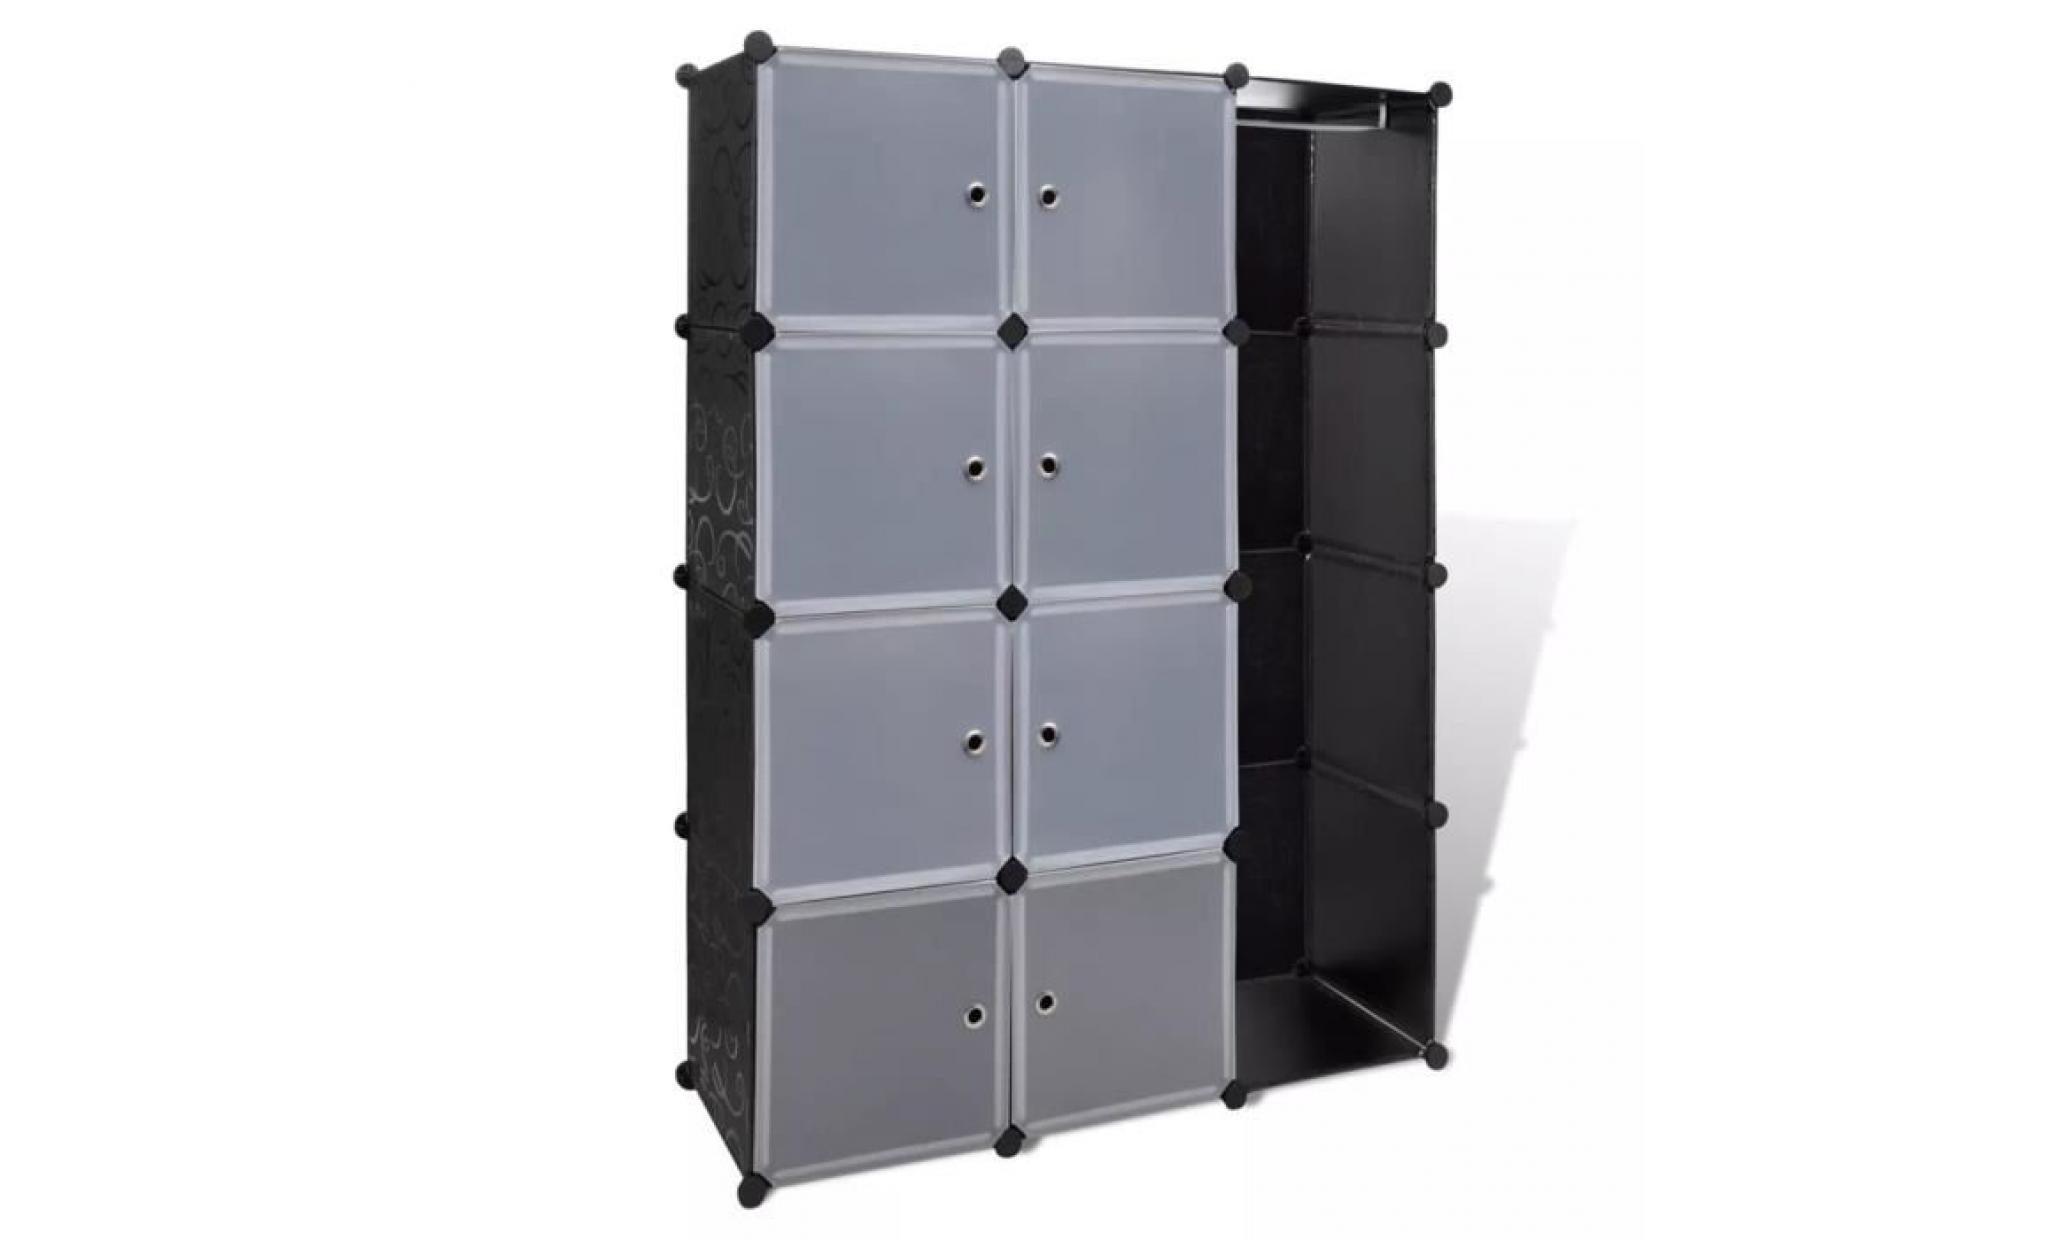 armoire modulaire 9 compartiments noir et blanc 37 x 115x150 cm armoire chambre armoire penderie armoire de chambre contemporain pas cher